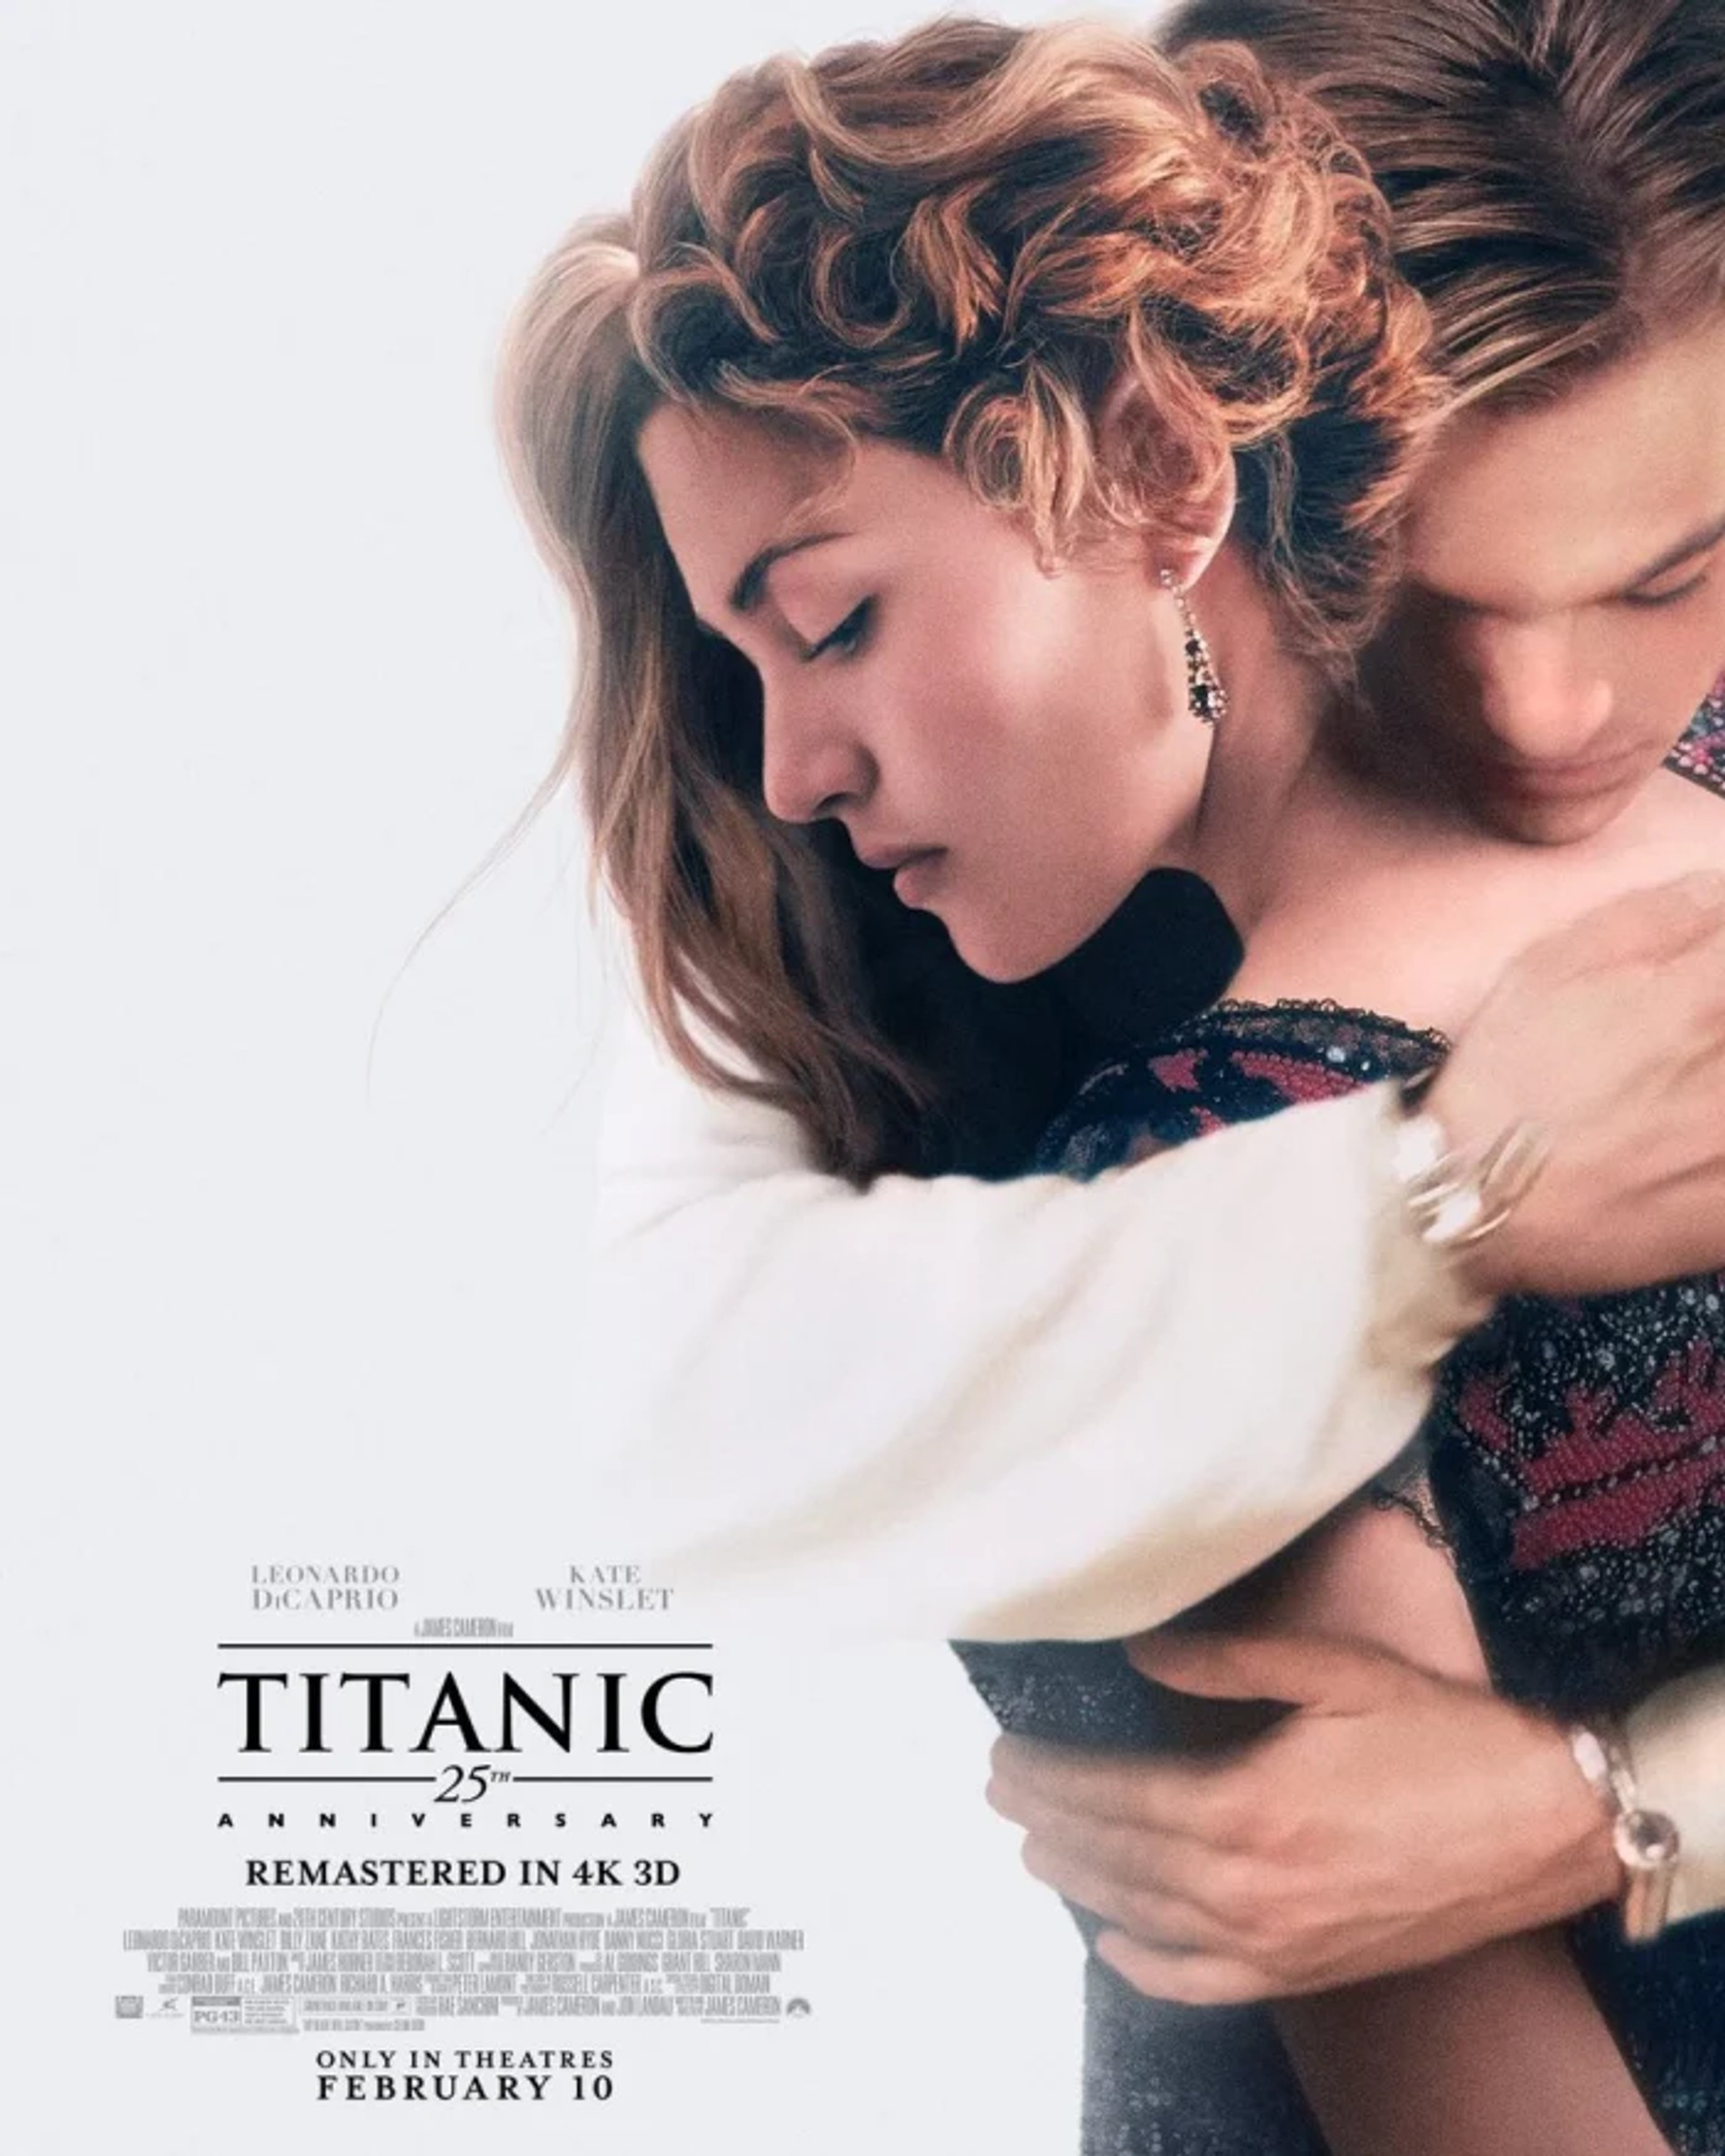 Постер к обновленному «Титанику»
Фото: Paramount Pictures